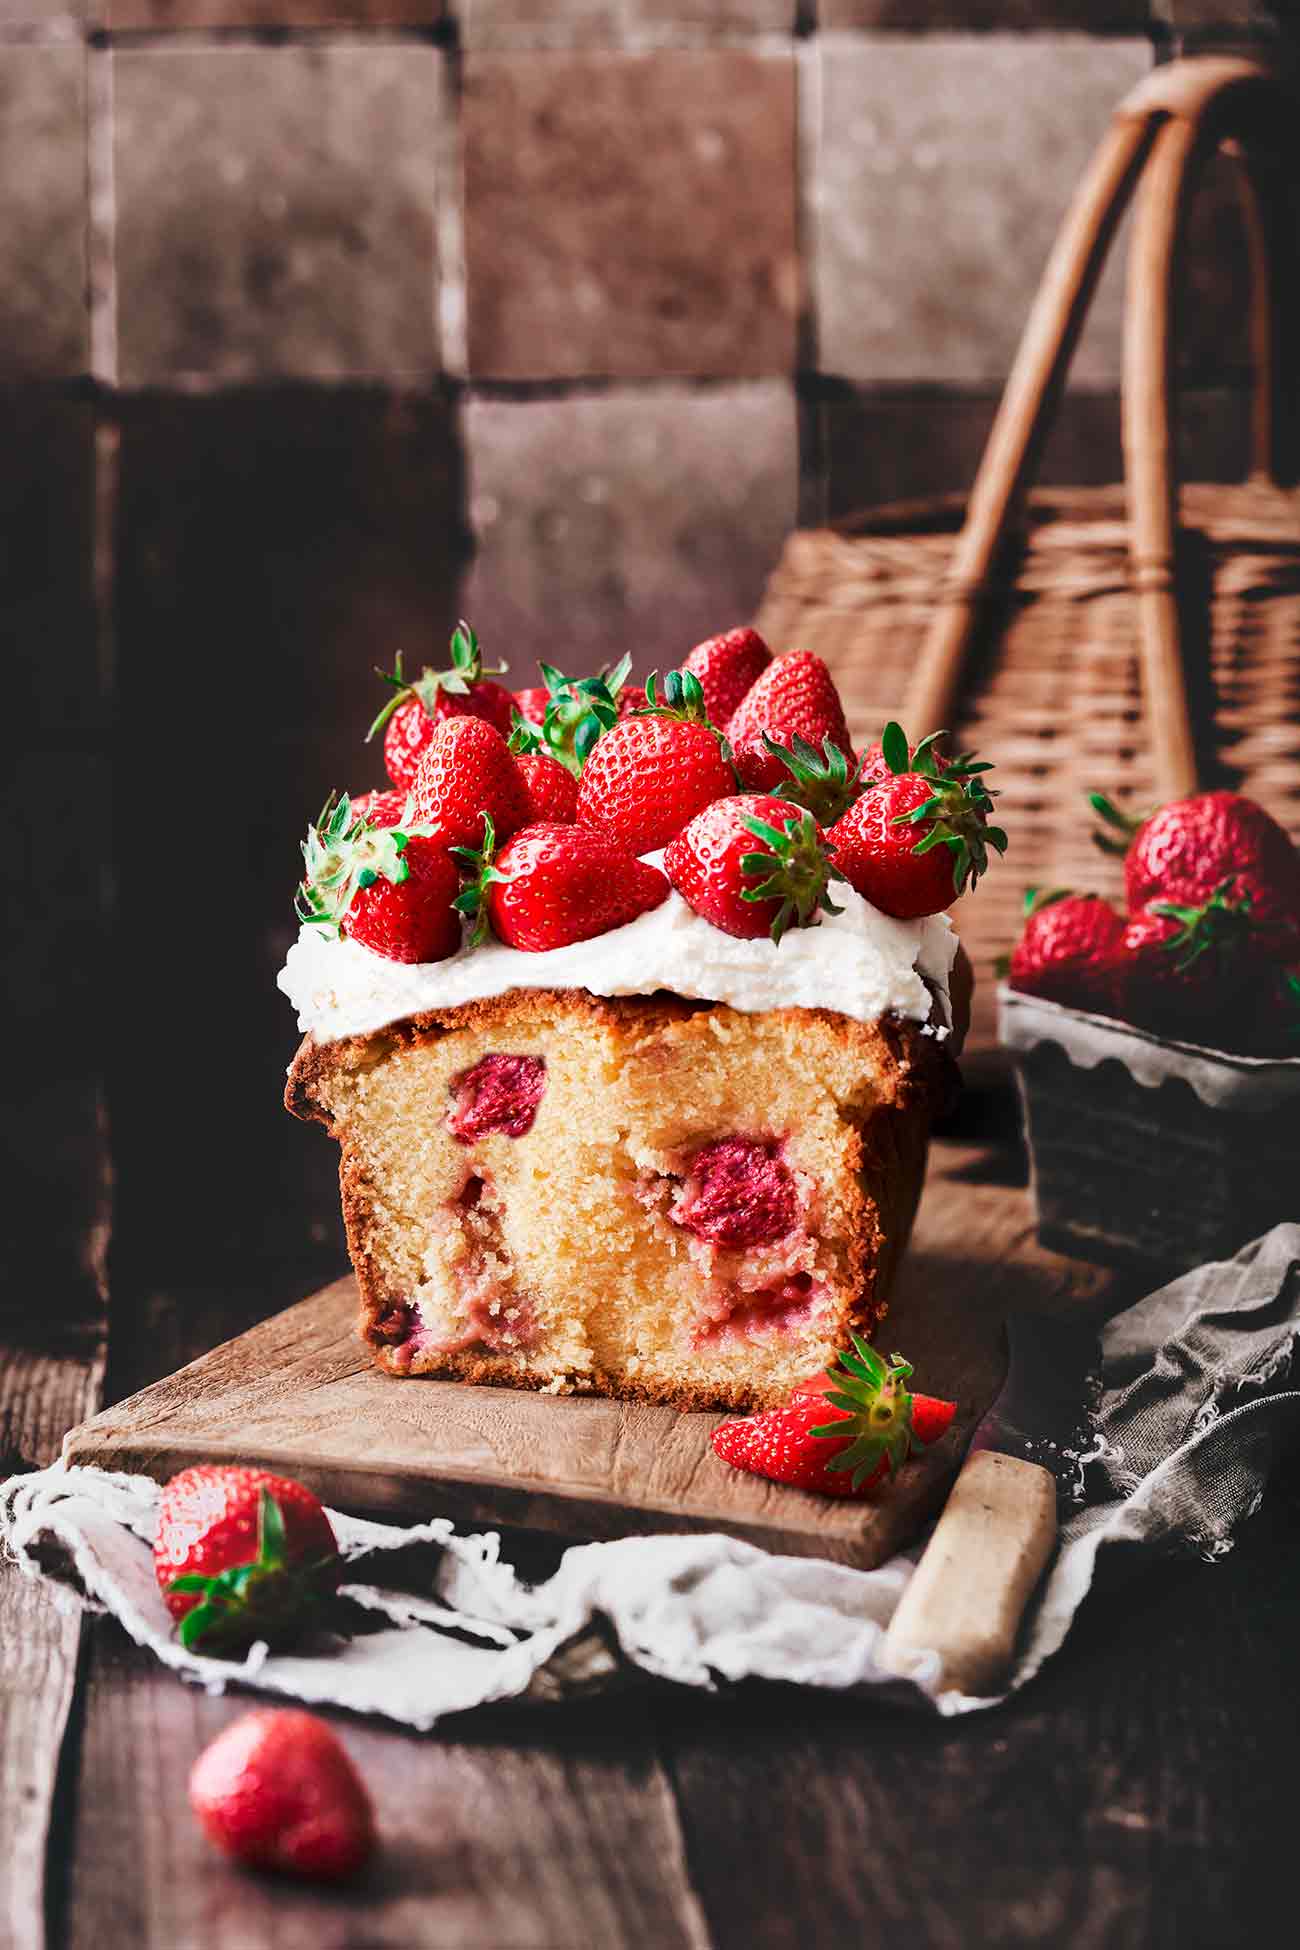 Dieser hübsche Kastenkuchen ist der ideale Vor-Sommerkuchen…super einfach und doch so verdammt lecker. Süßer Vanilleteig mit frischen Erdbeeren und Frischkäsecreme. Dann mit vielen frischen Erdbeeren belegt. So hübsch mit so wenig Aufwand. 